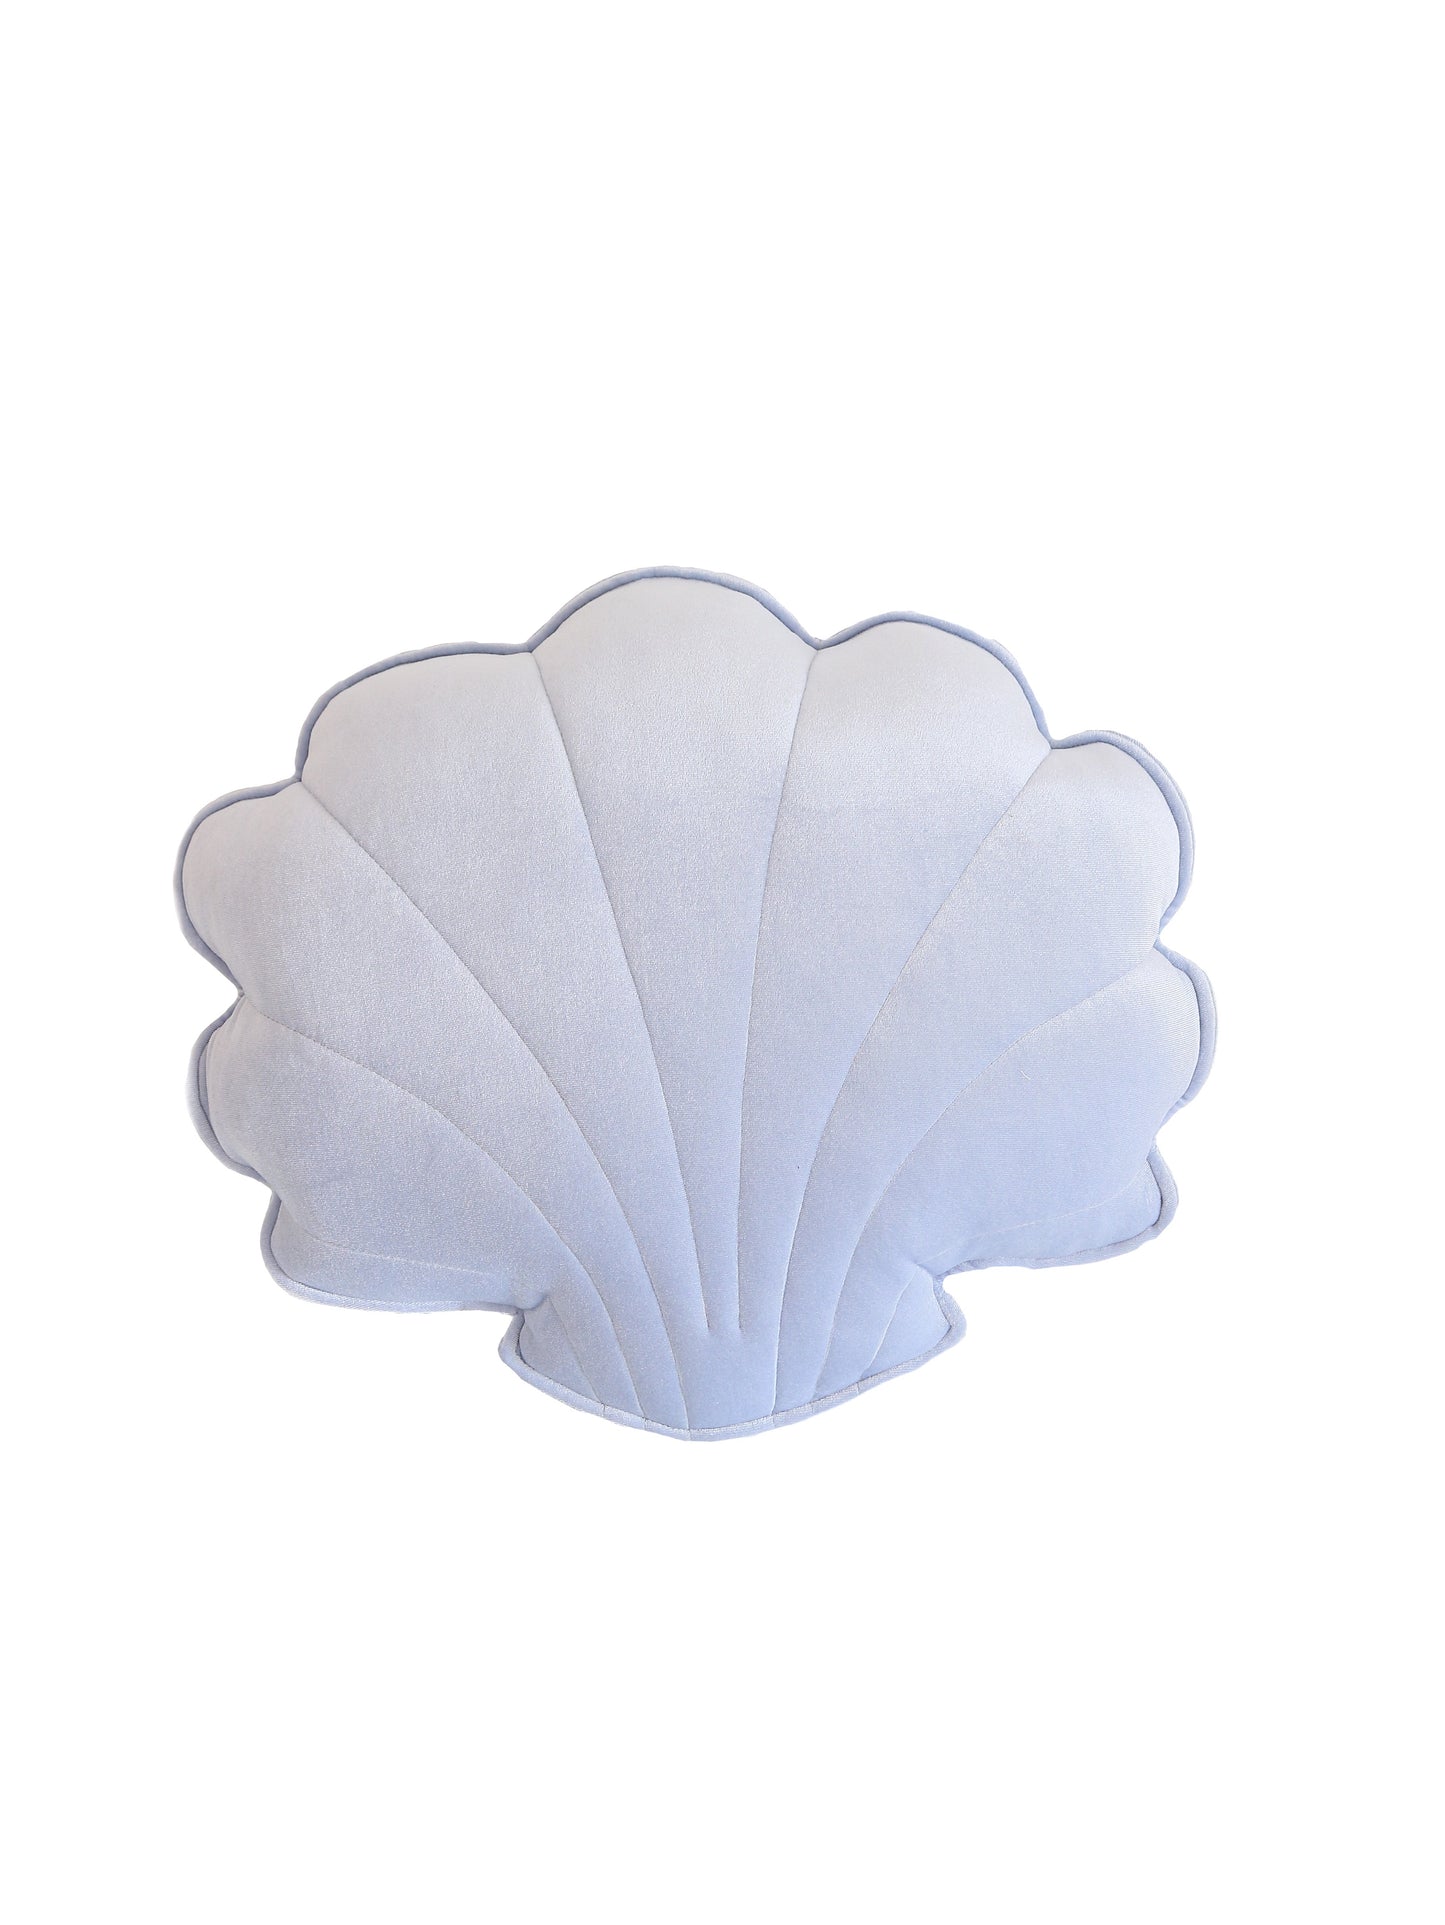 Velvet “Blue Pearl” Shell Pillow